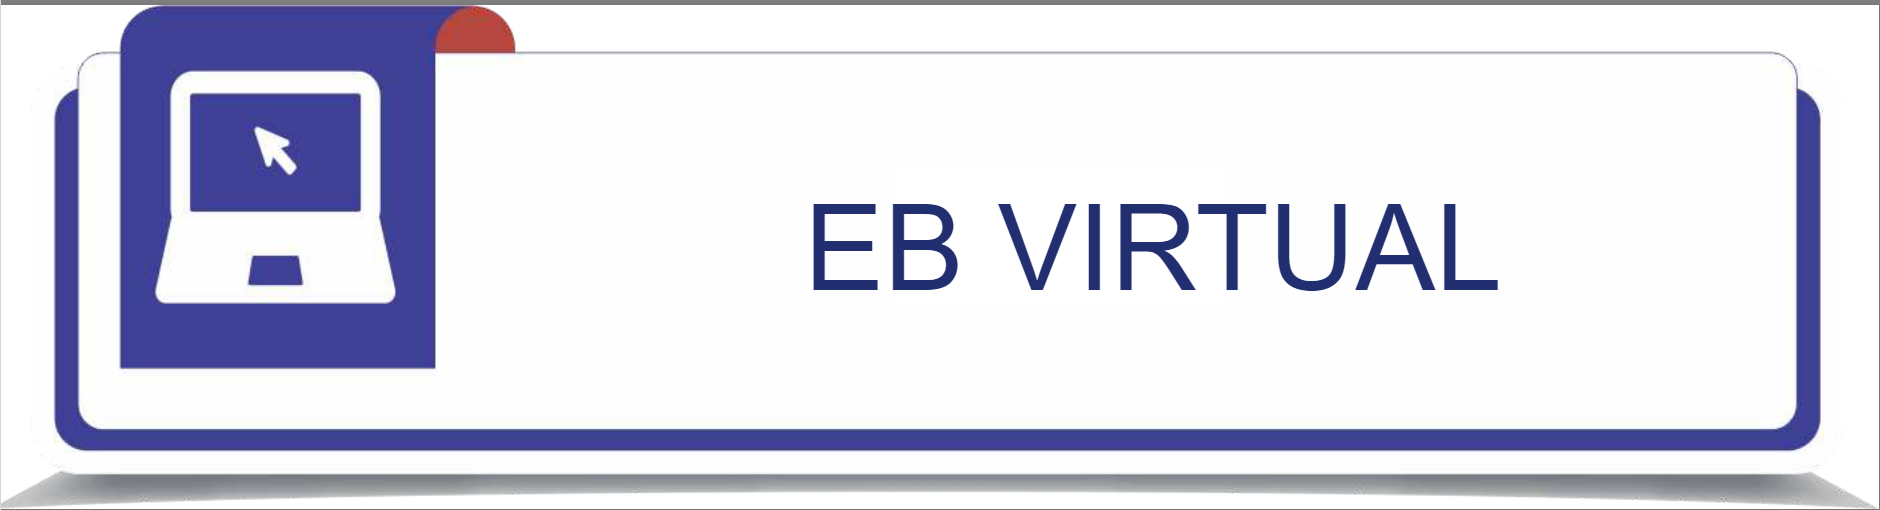 EB Virtual